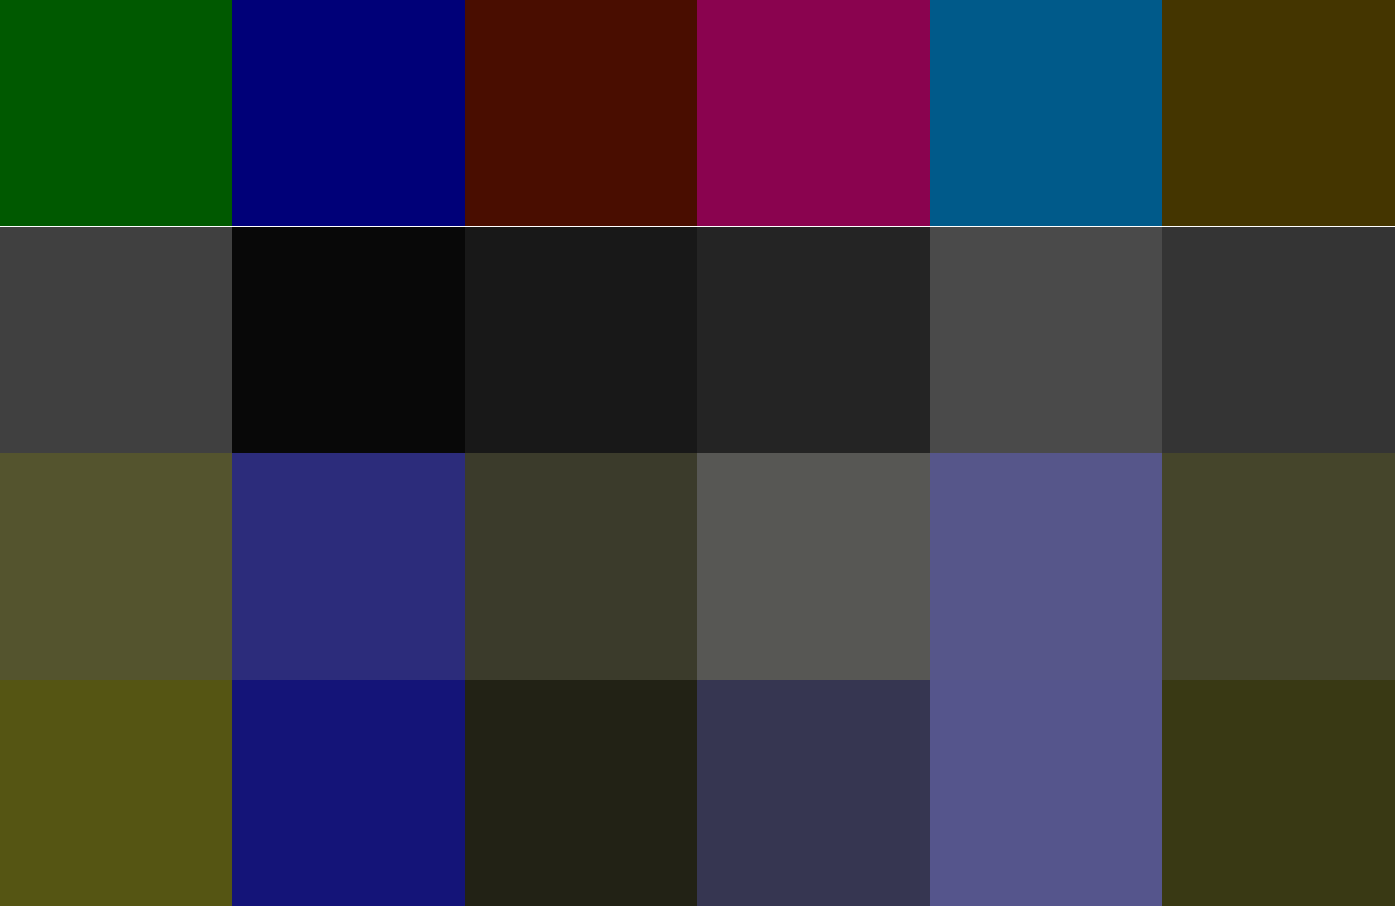 Dark, 6 colors